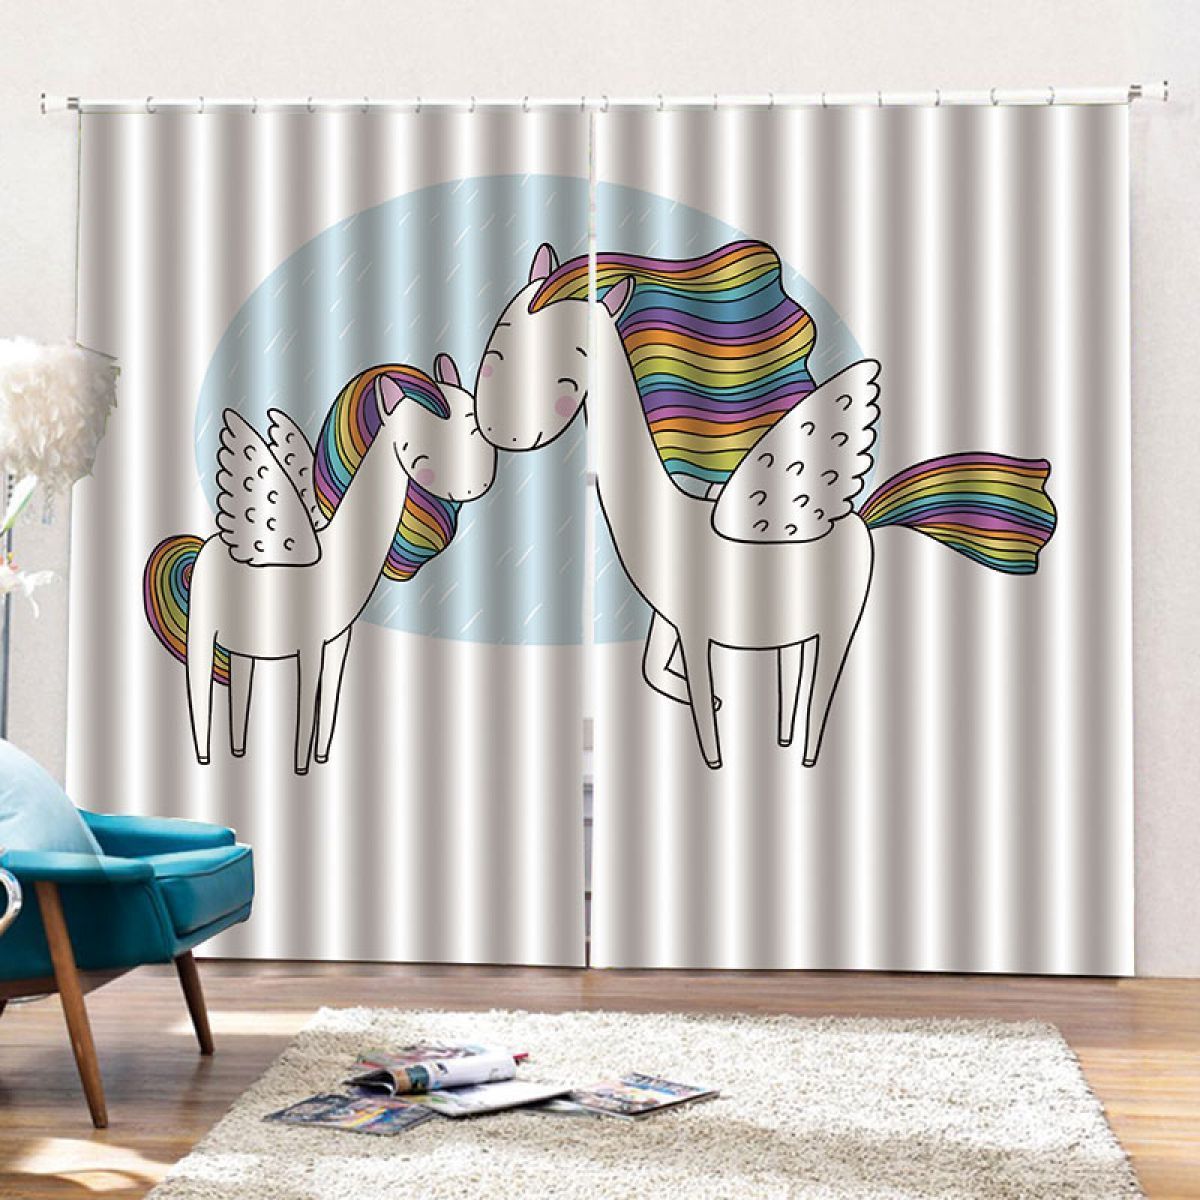 3d Cartoon Rainbow Horses Printed Window Curtain Home Decor